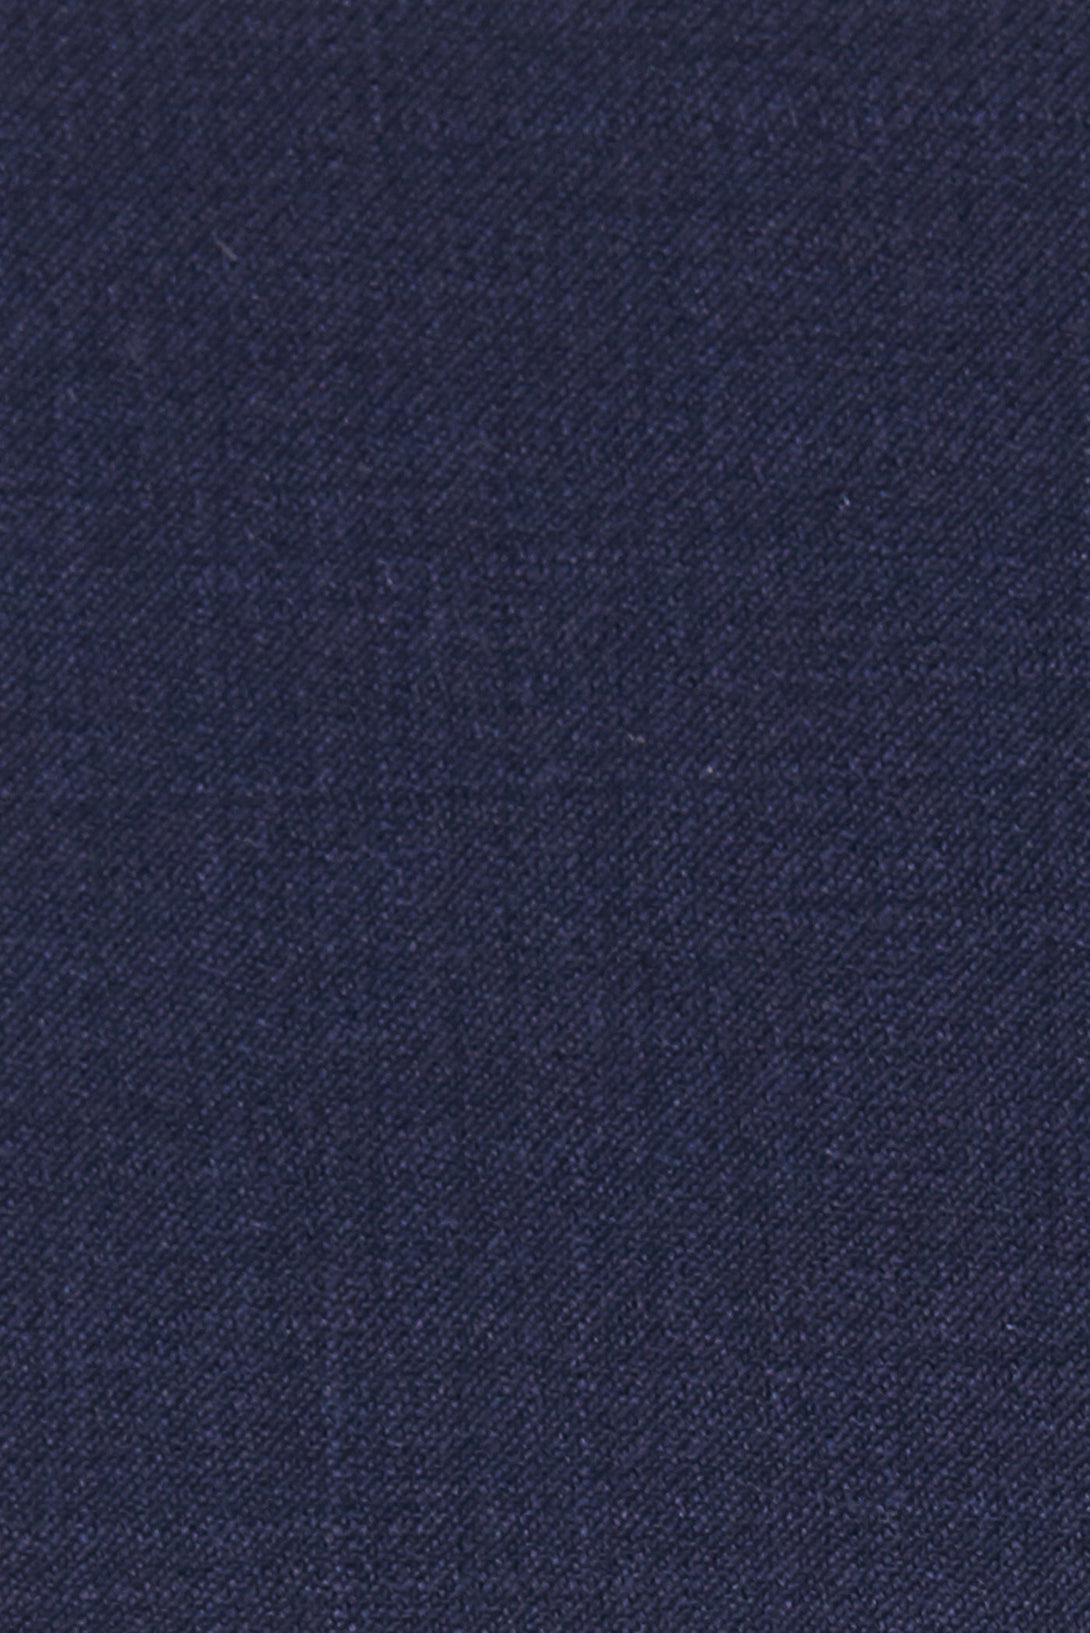 Navy 100% Wool Vest-The Suit Spot